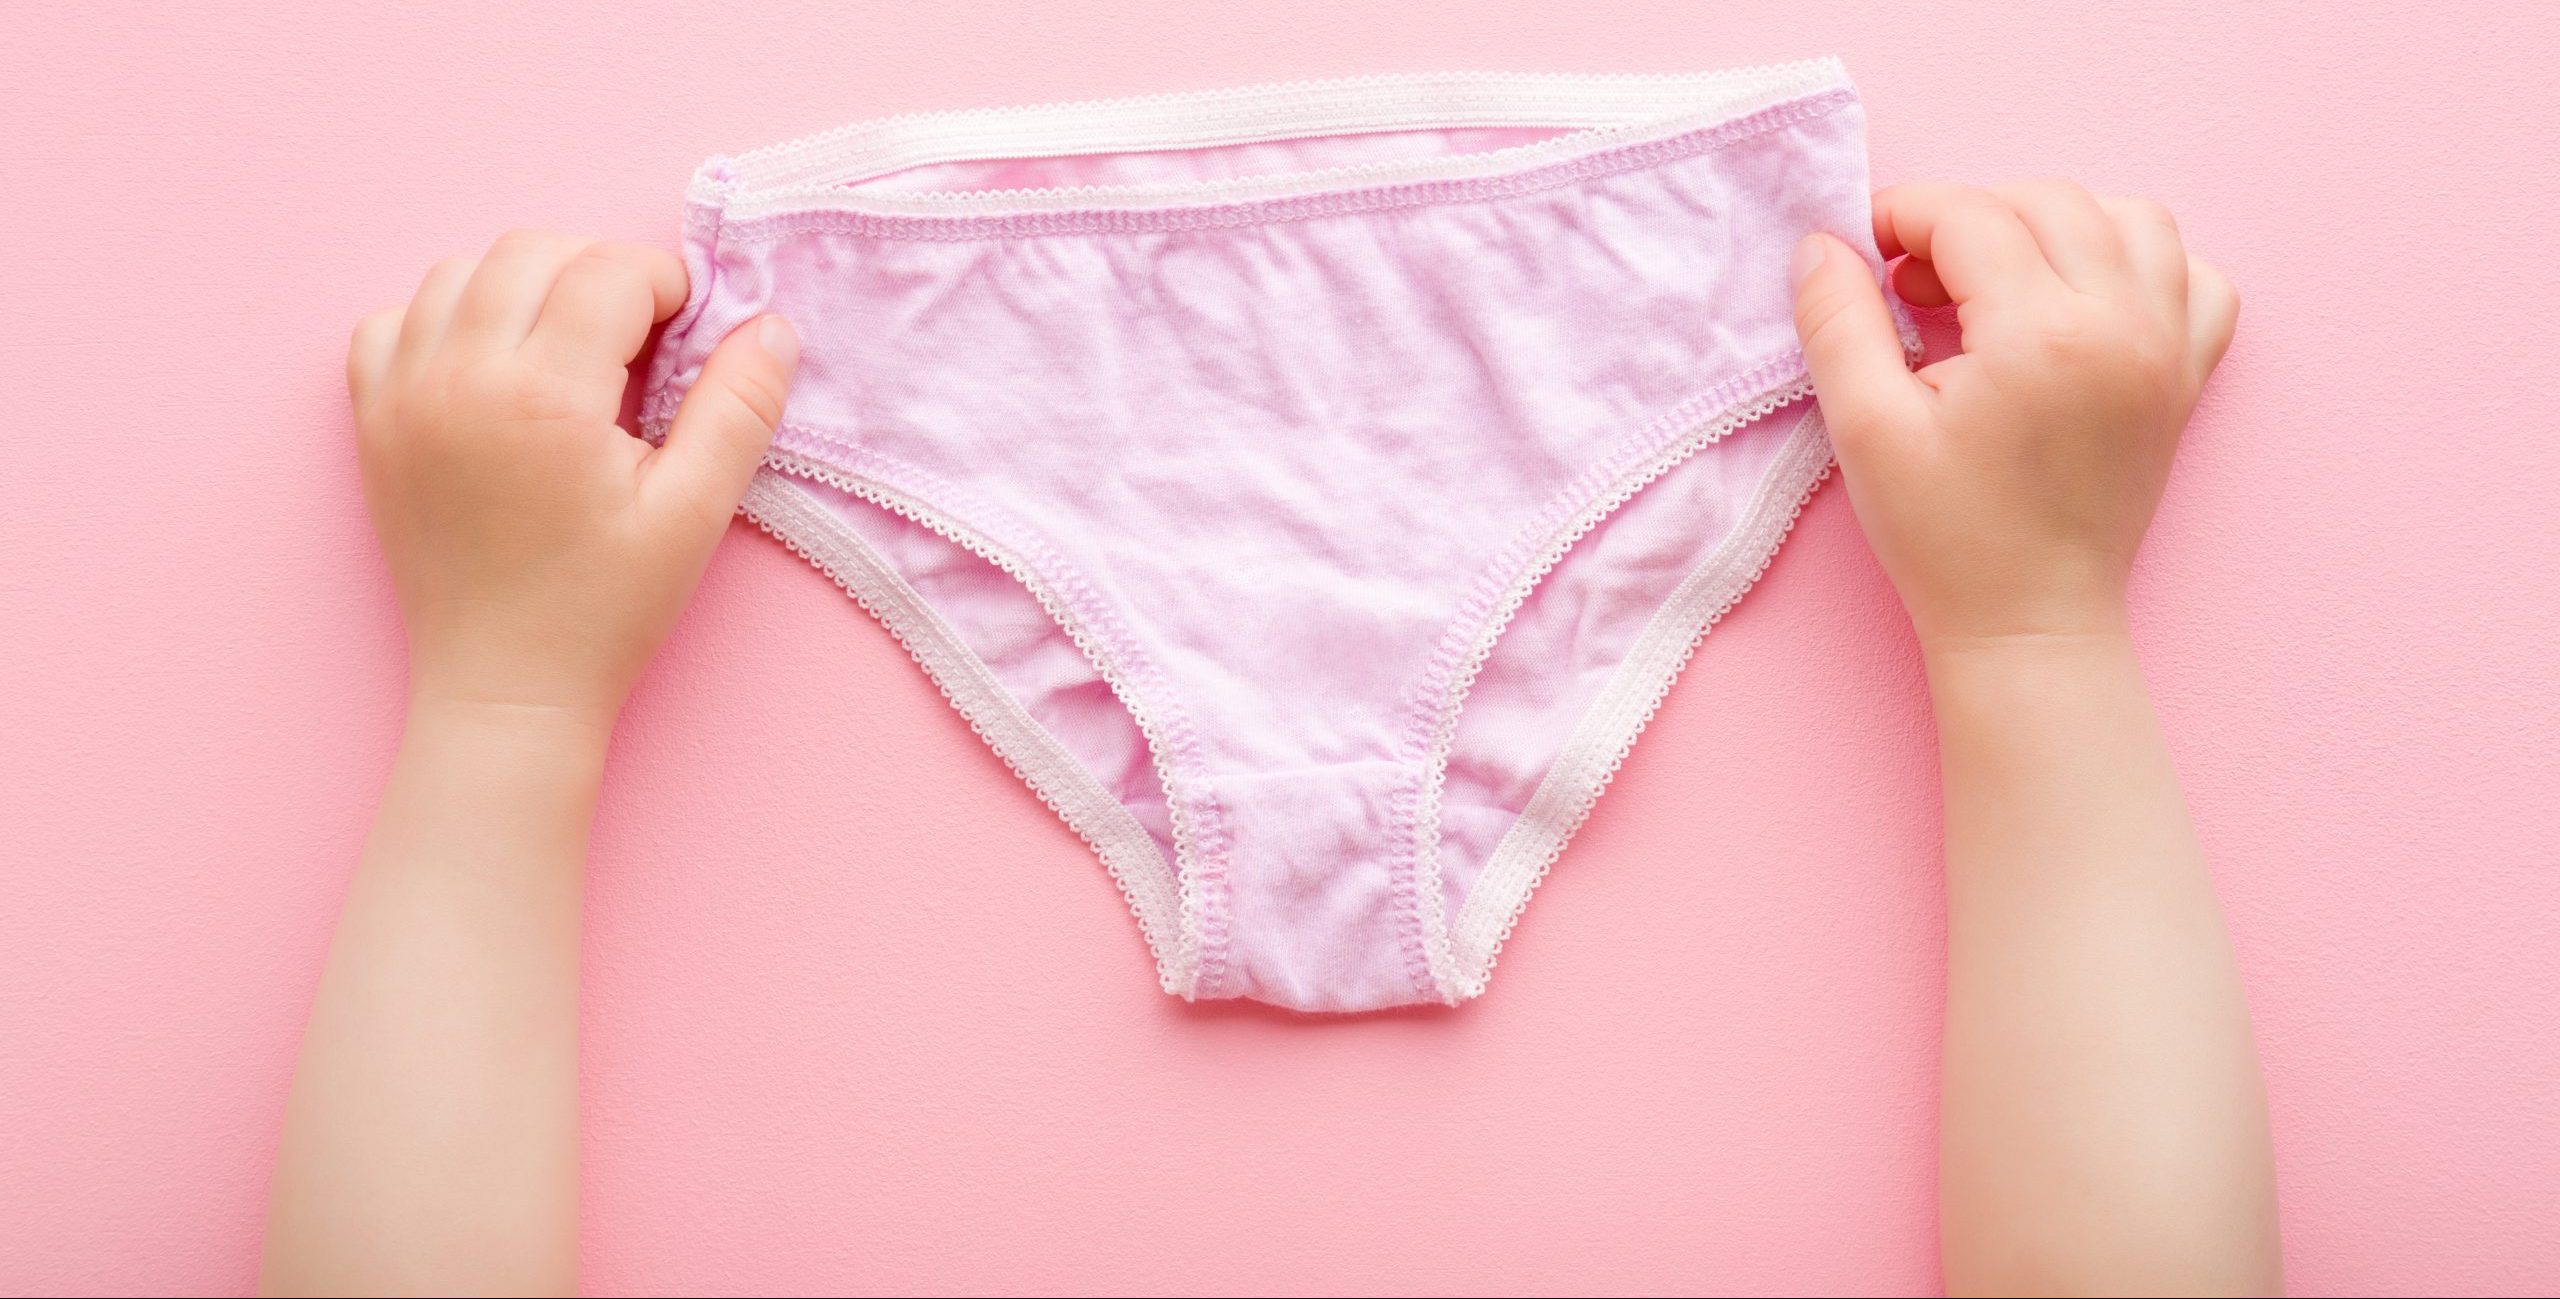 Essentials Jersey Cotton Blend Big Girls' Underwear, 10-Count